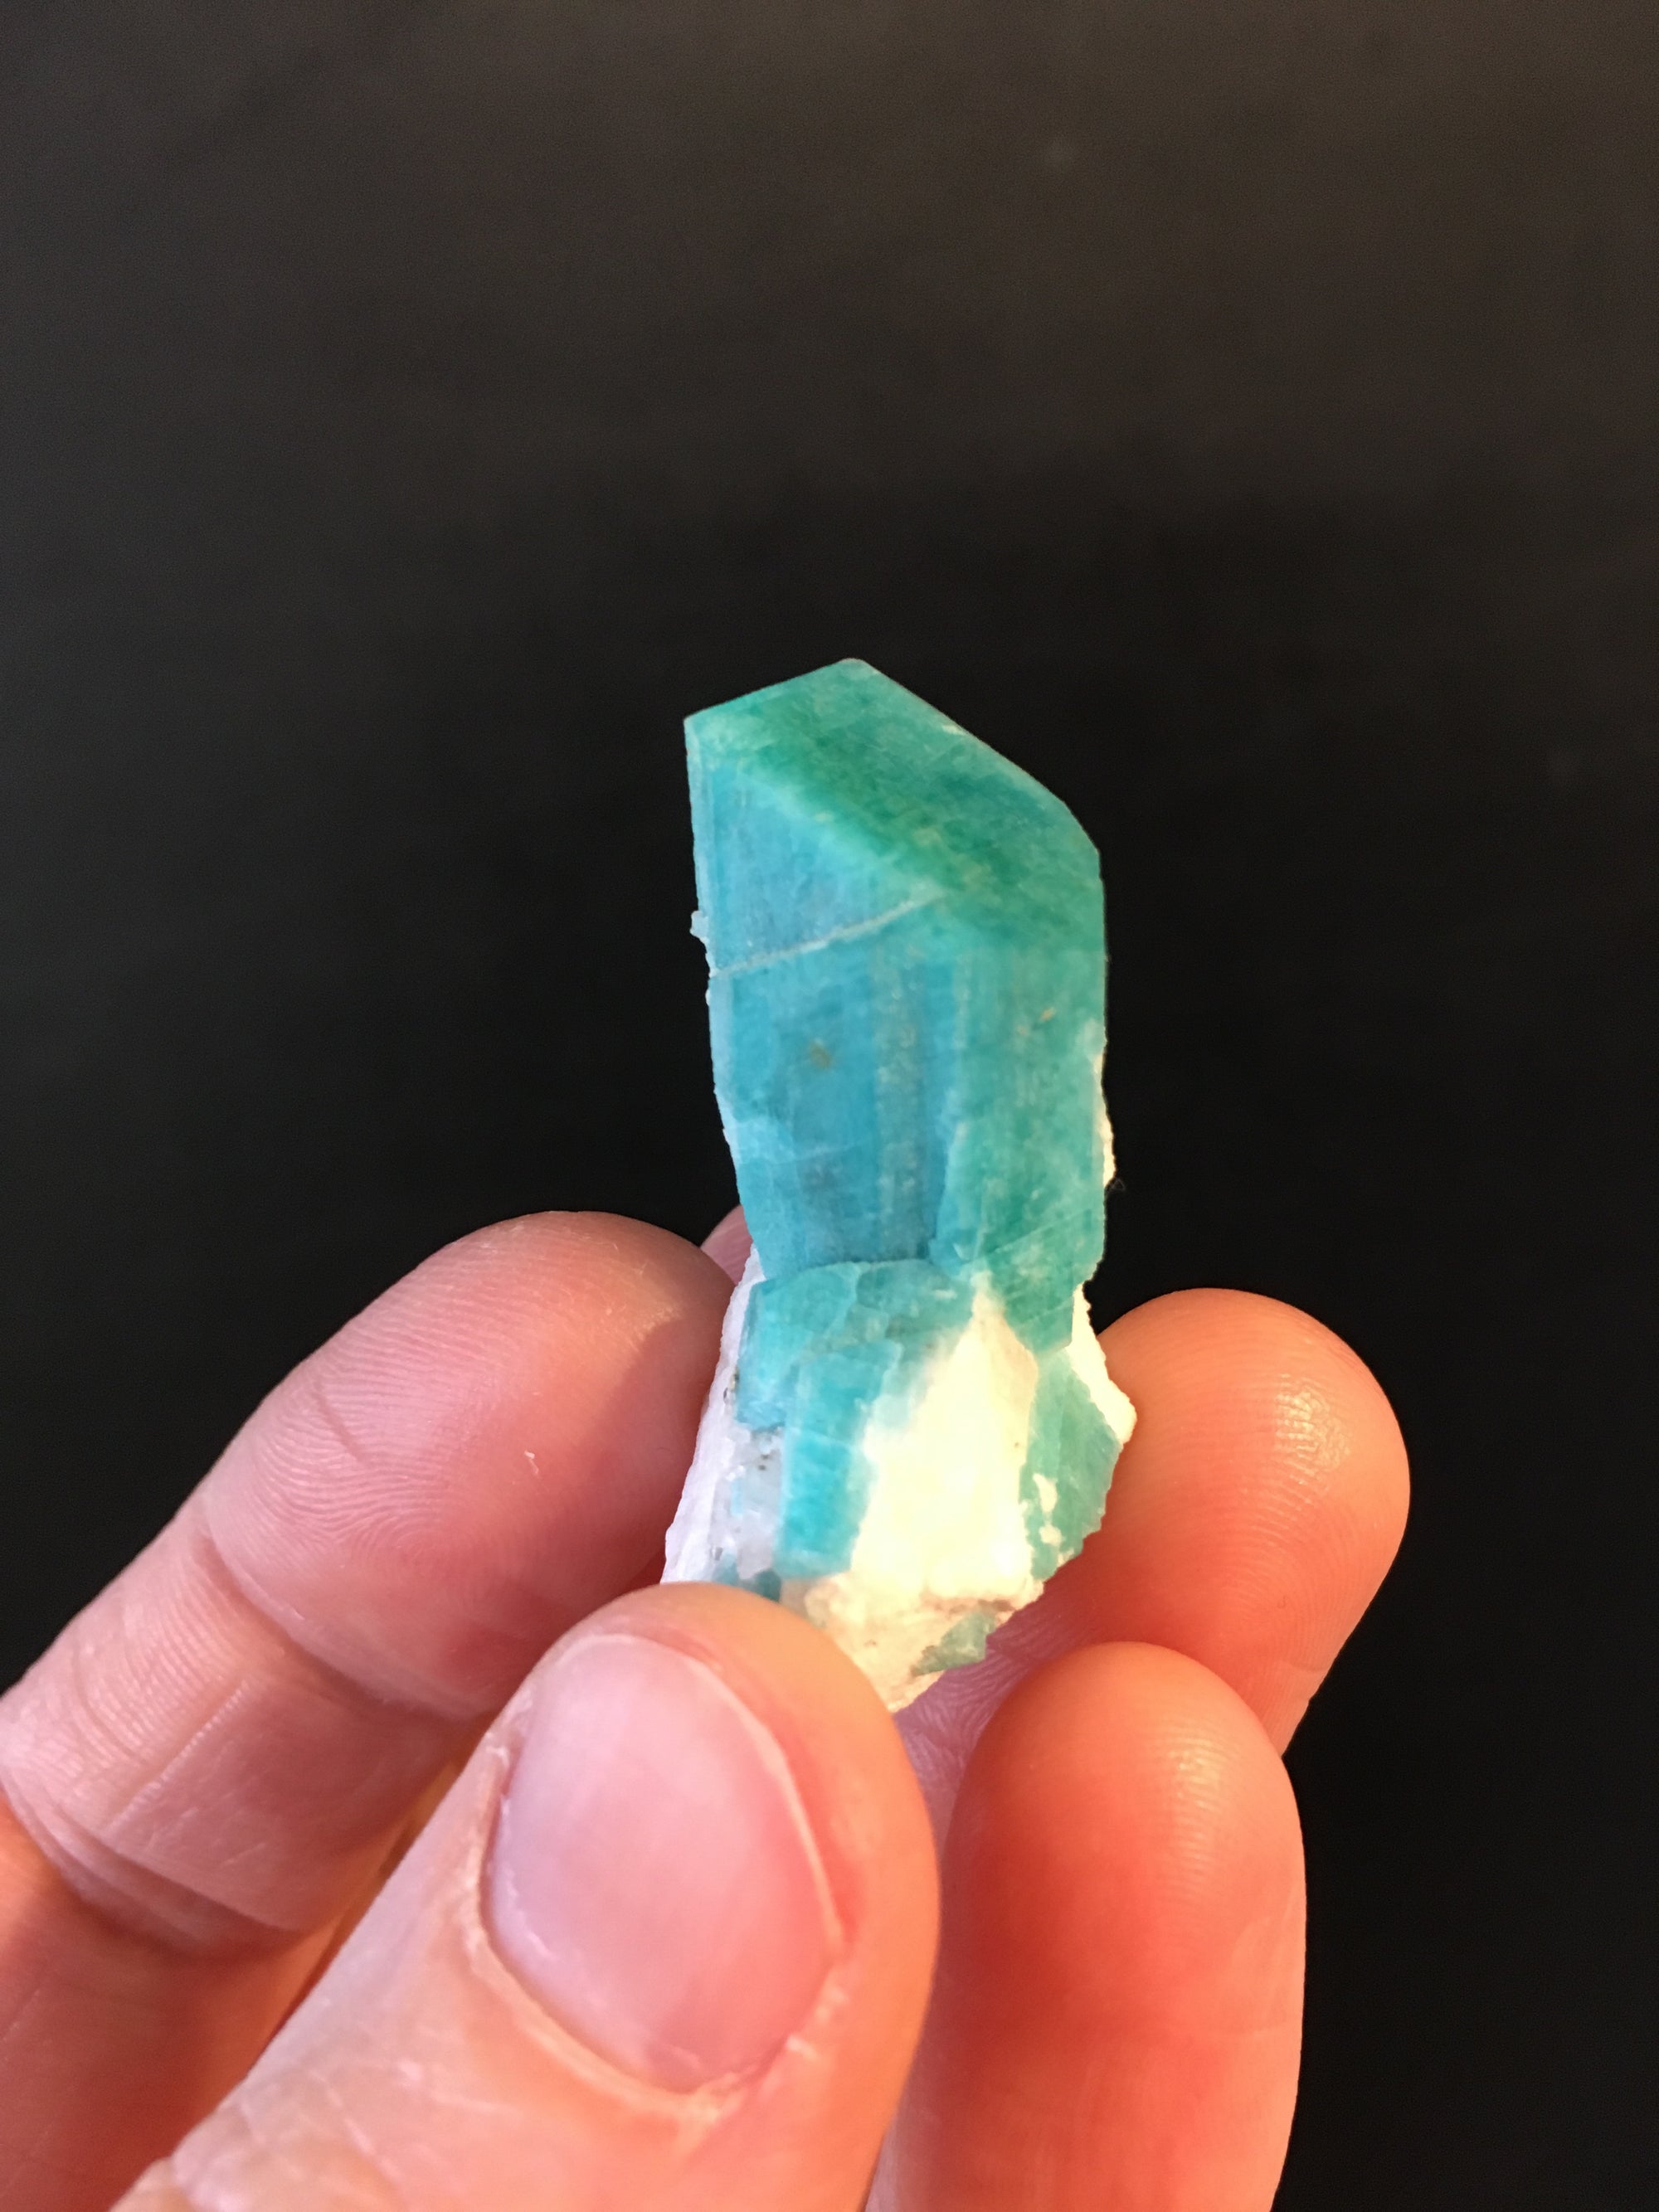 1 Amazonite Crystal, Teller County, Colorado